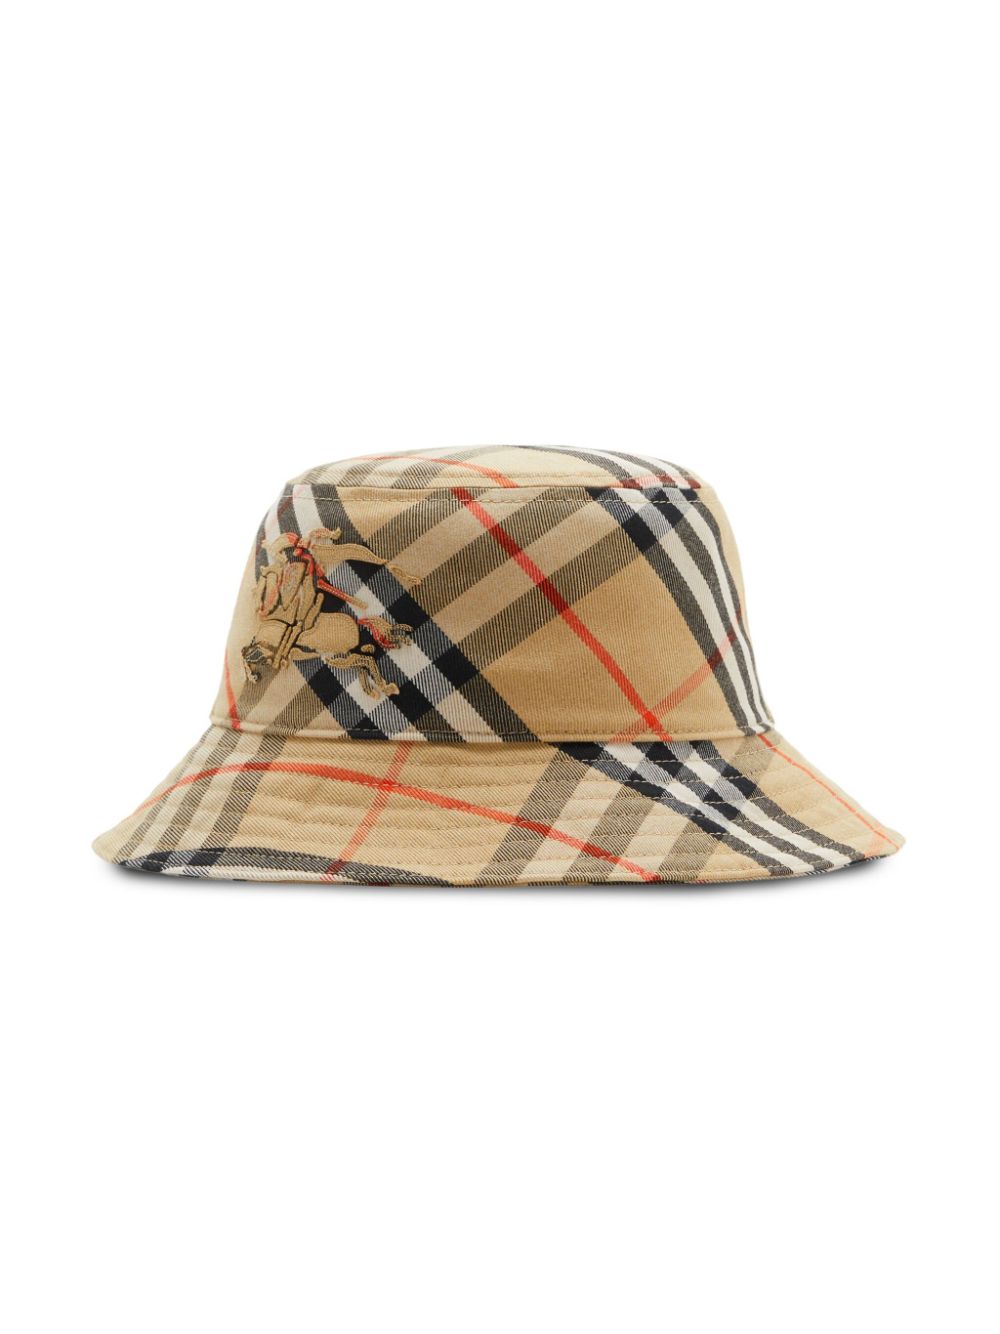 Vintage Check-pattern bucket hat<BR/><BR/><BR/>